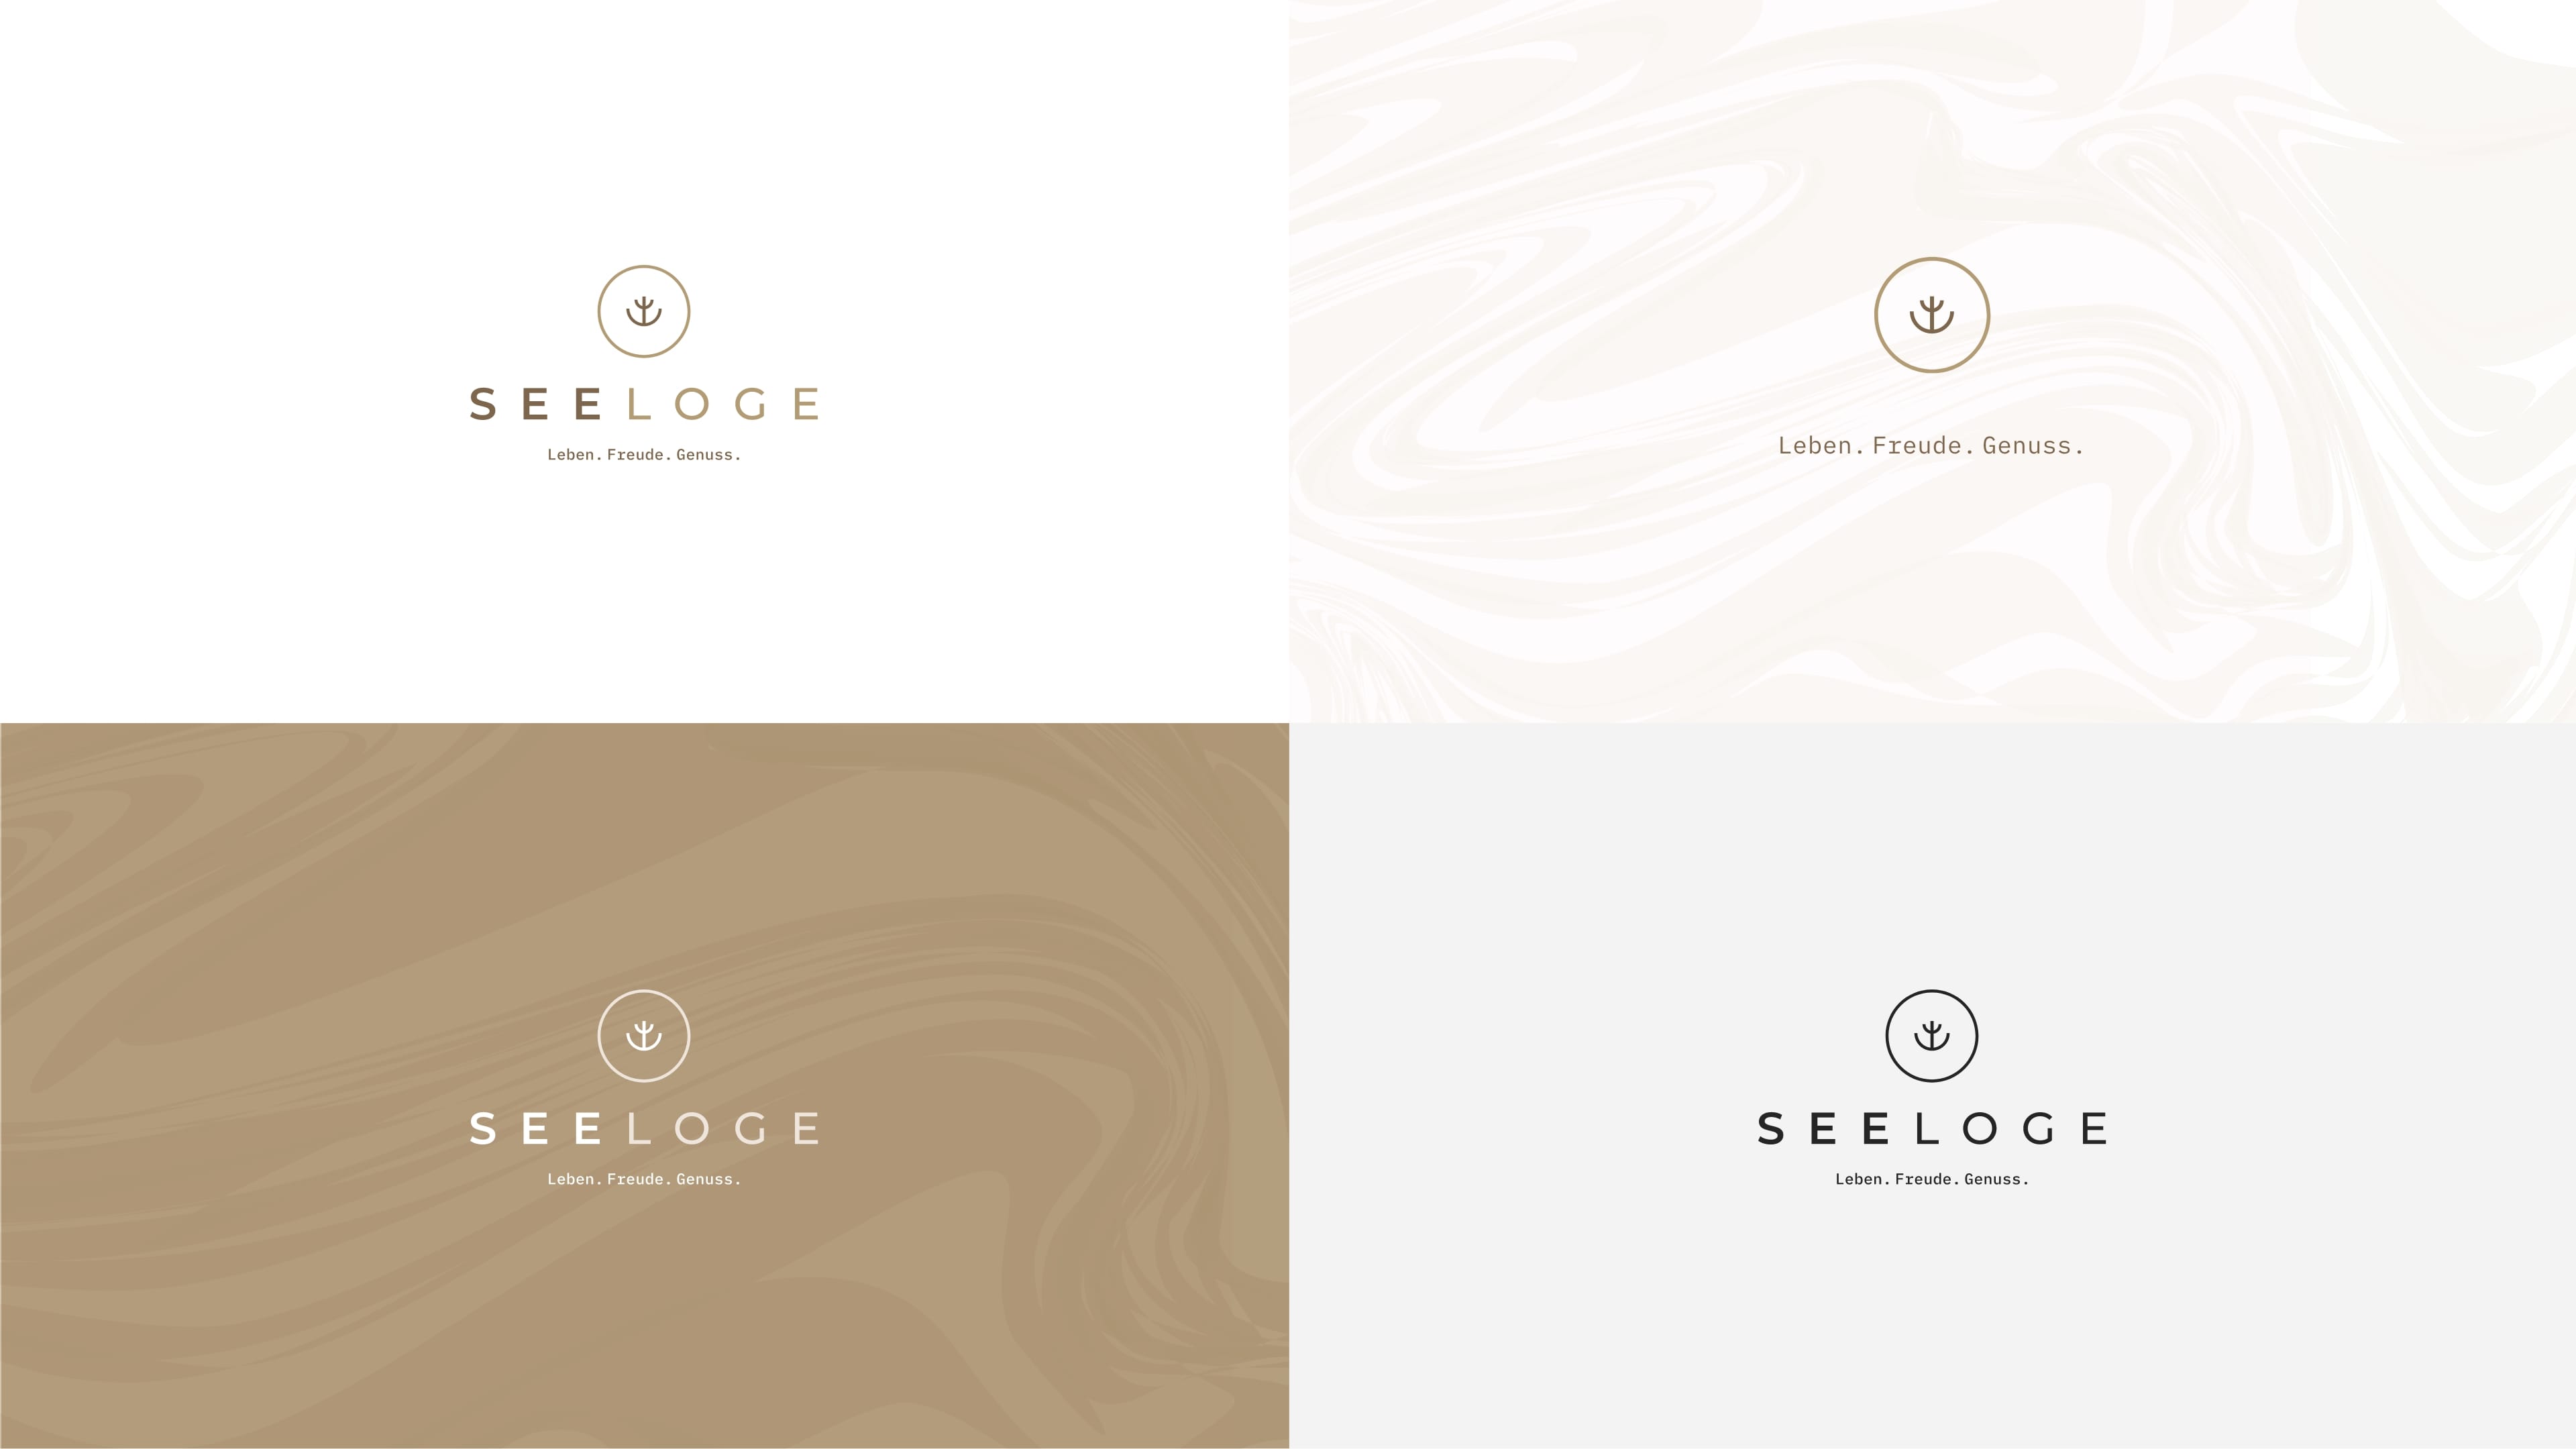 Vier unterschiedliche Logos des Hotels Seeloge